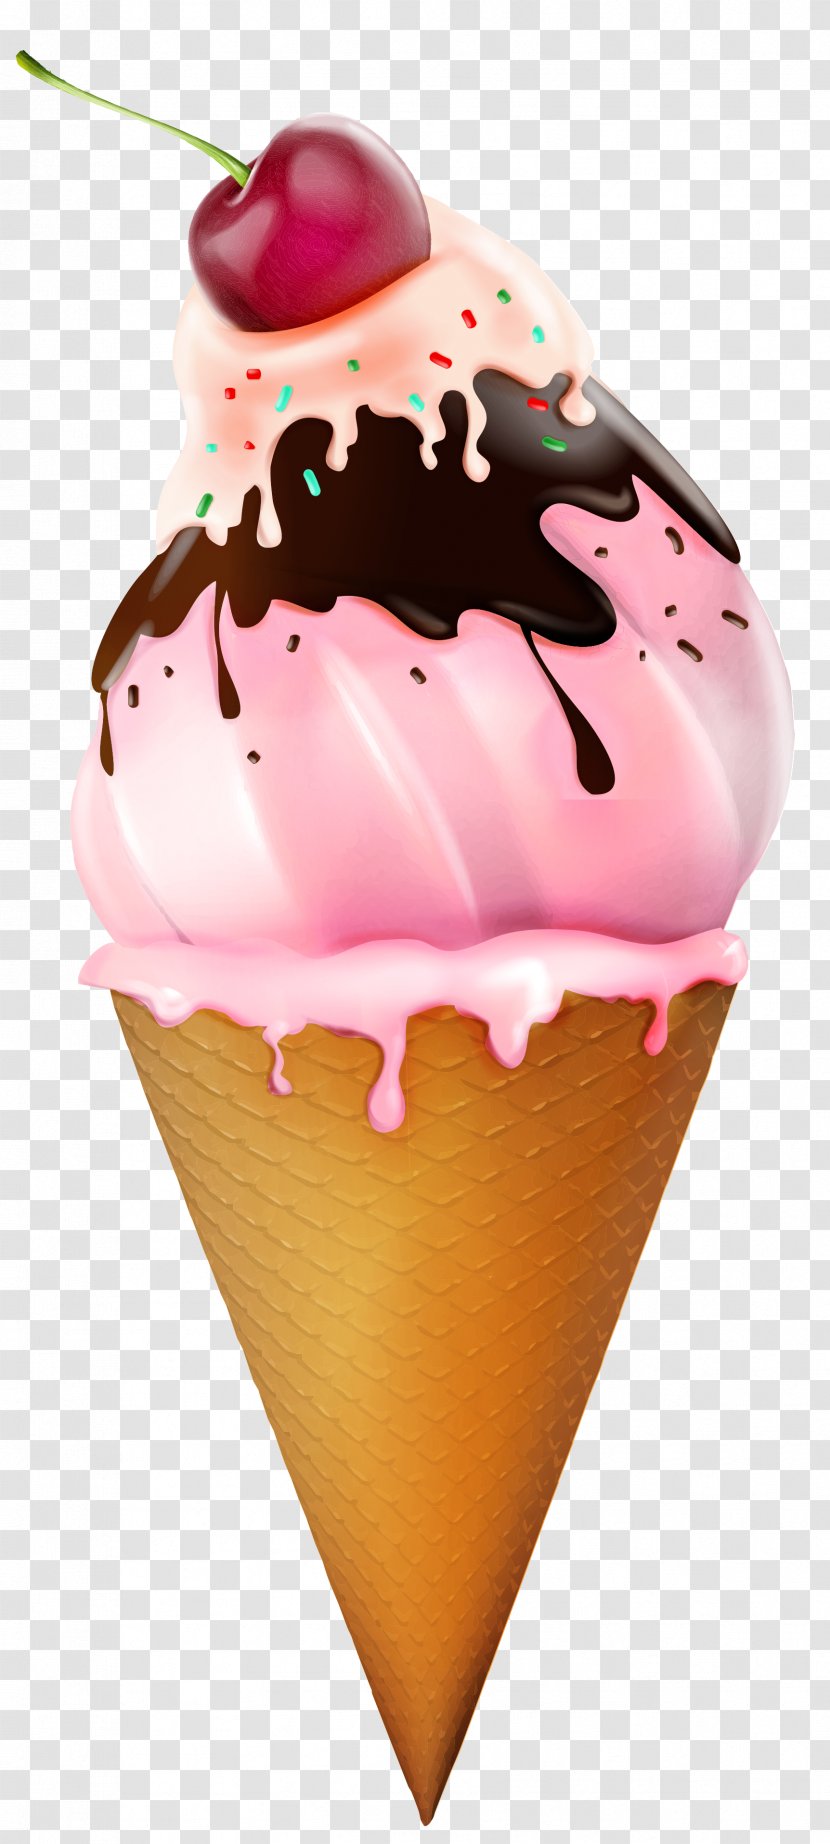 Ice Cream Image - Flavor - Neapolitan Transparent PNG